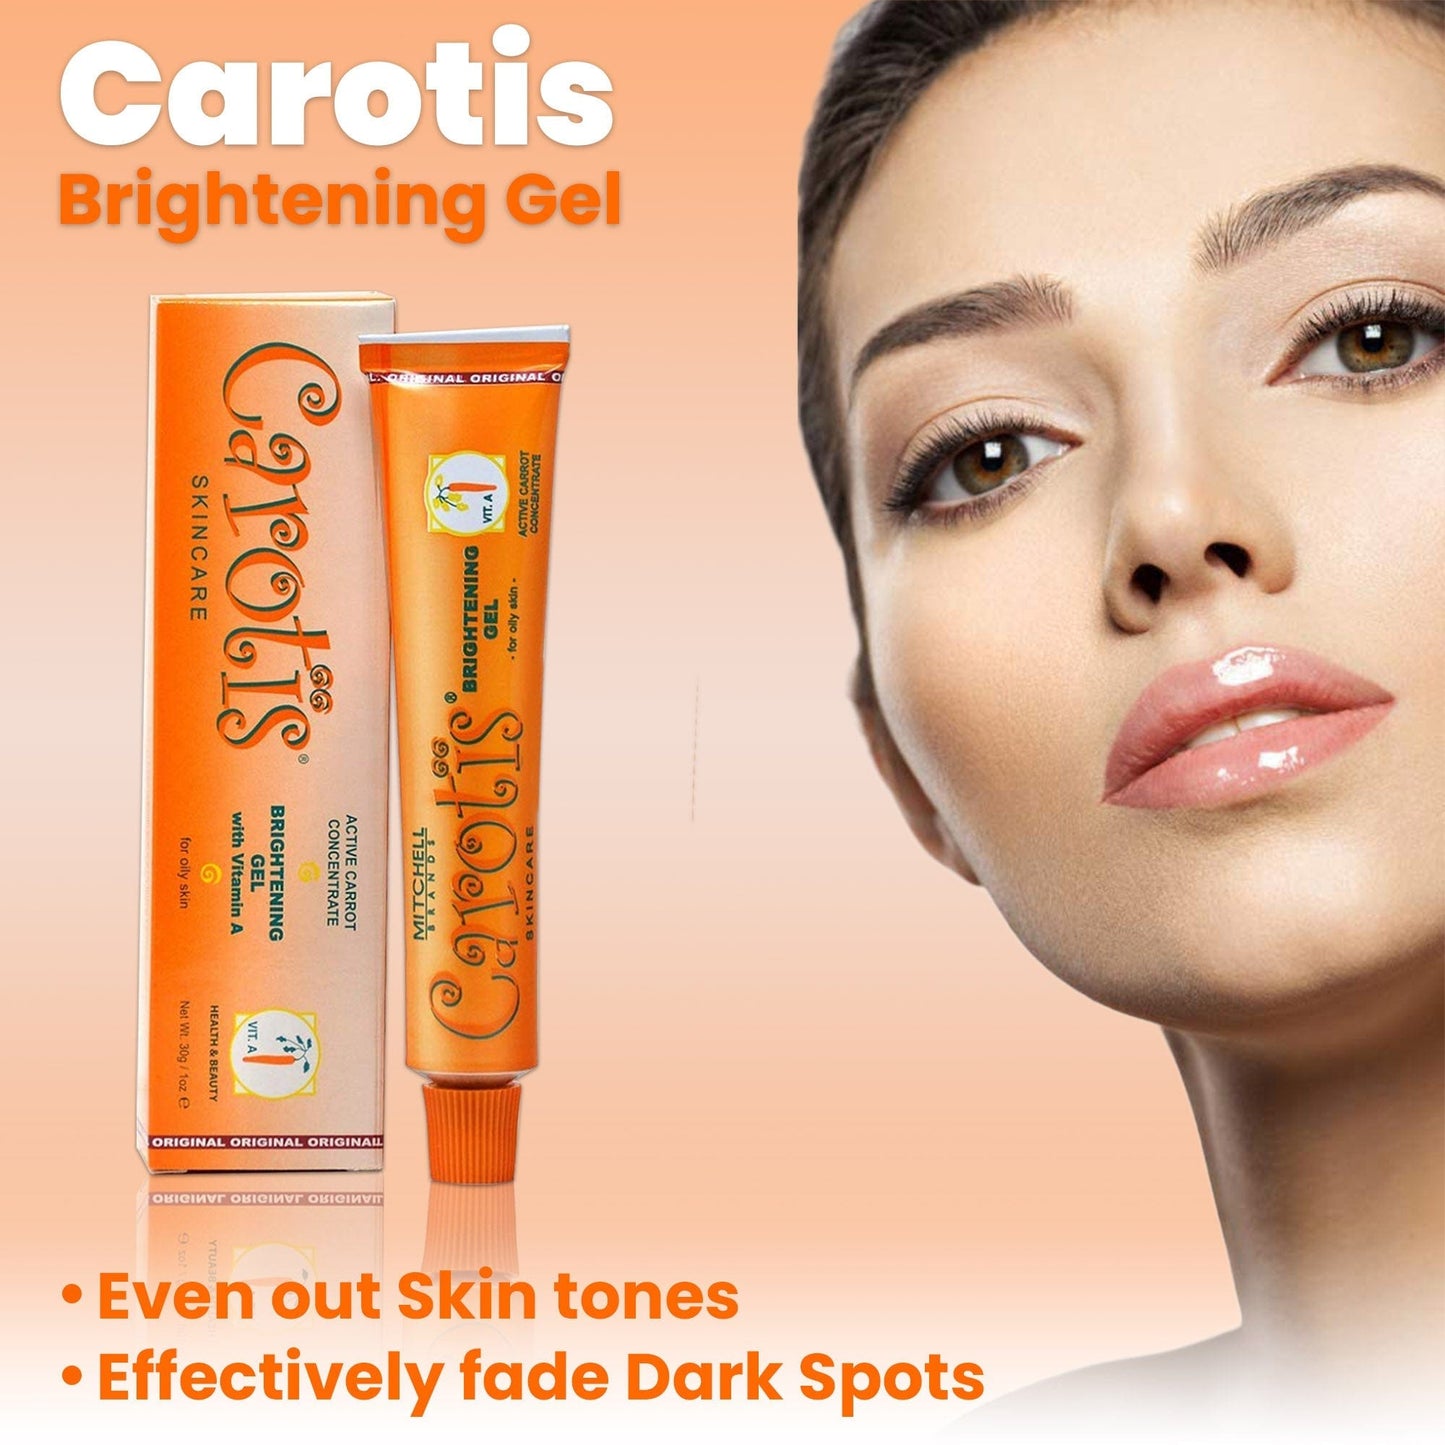 Carotis Brightening Gel mit Vitamin A - 30g / 1 fl oz Carotis - Mitchell Brands - Hautaufhellung, Hautaufhellung, Verblassen dunkler Flecken, Shea Butter, Haarwuchsmittel